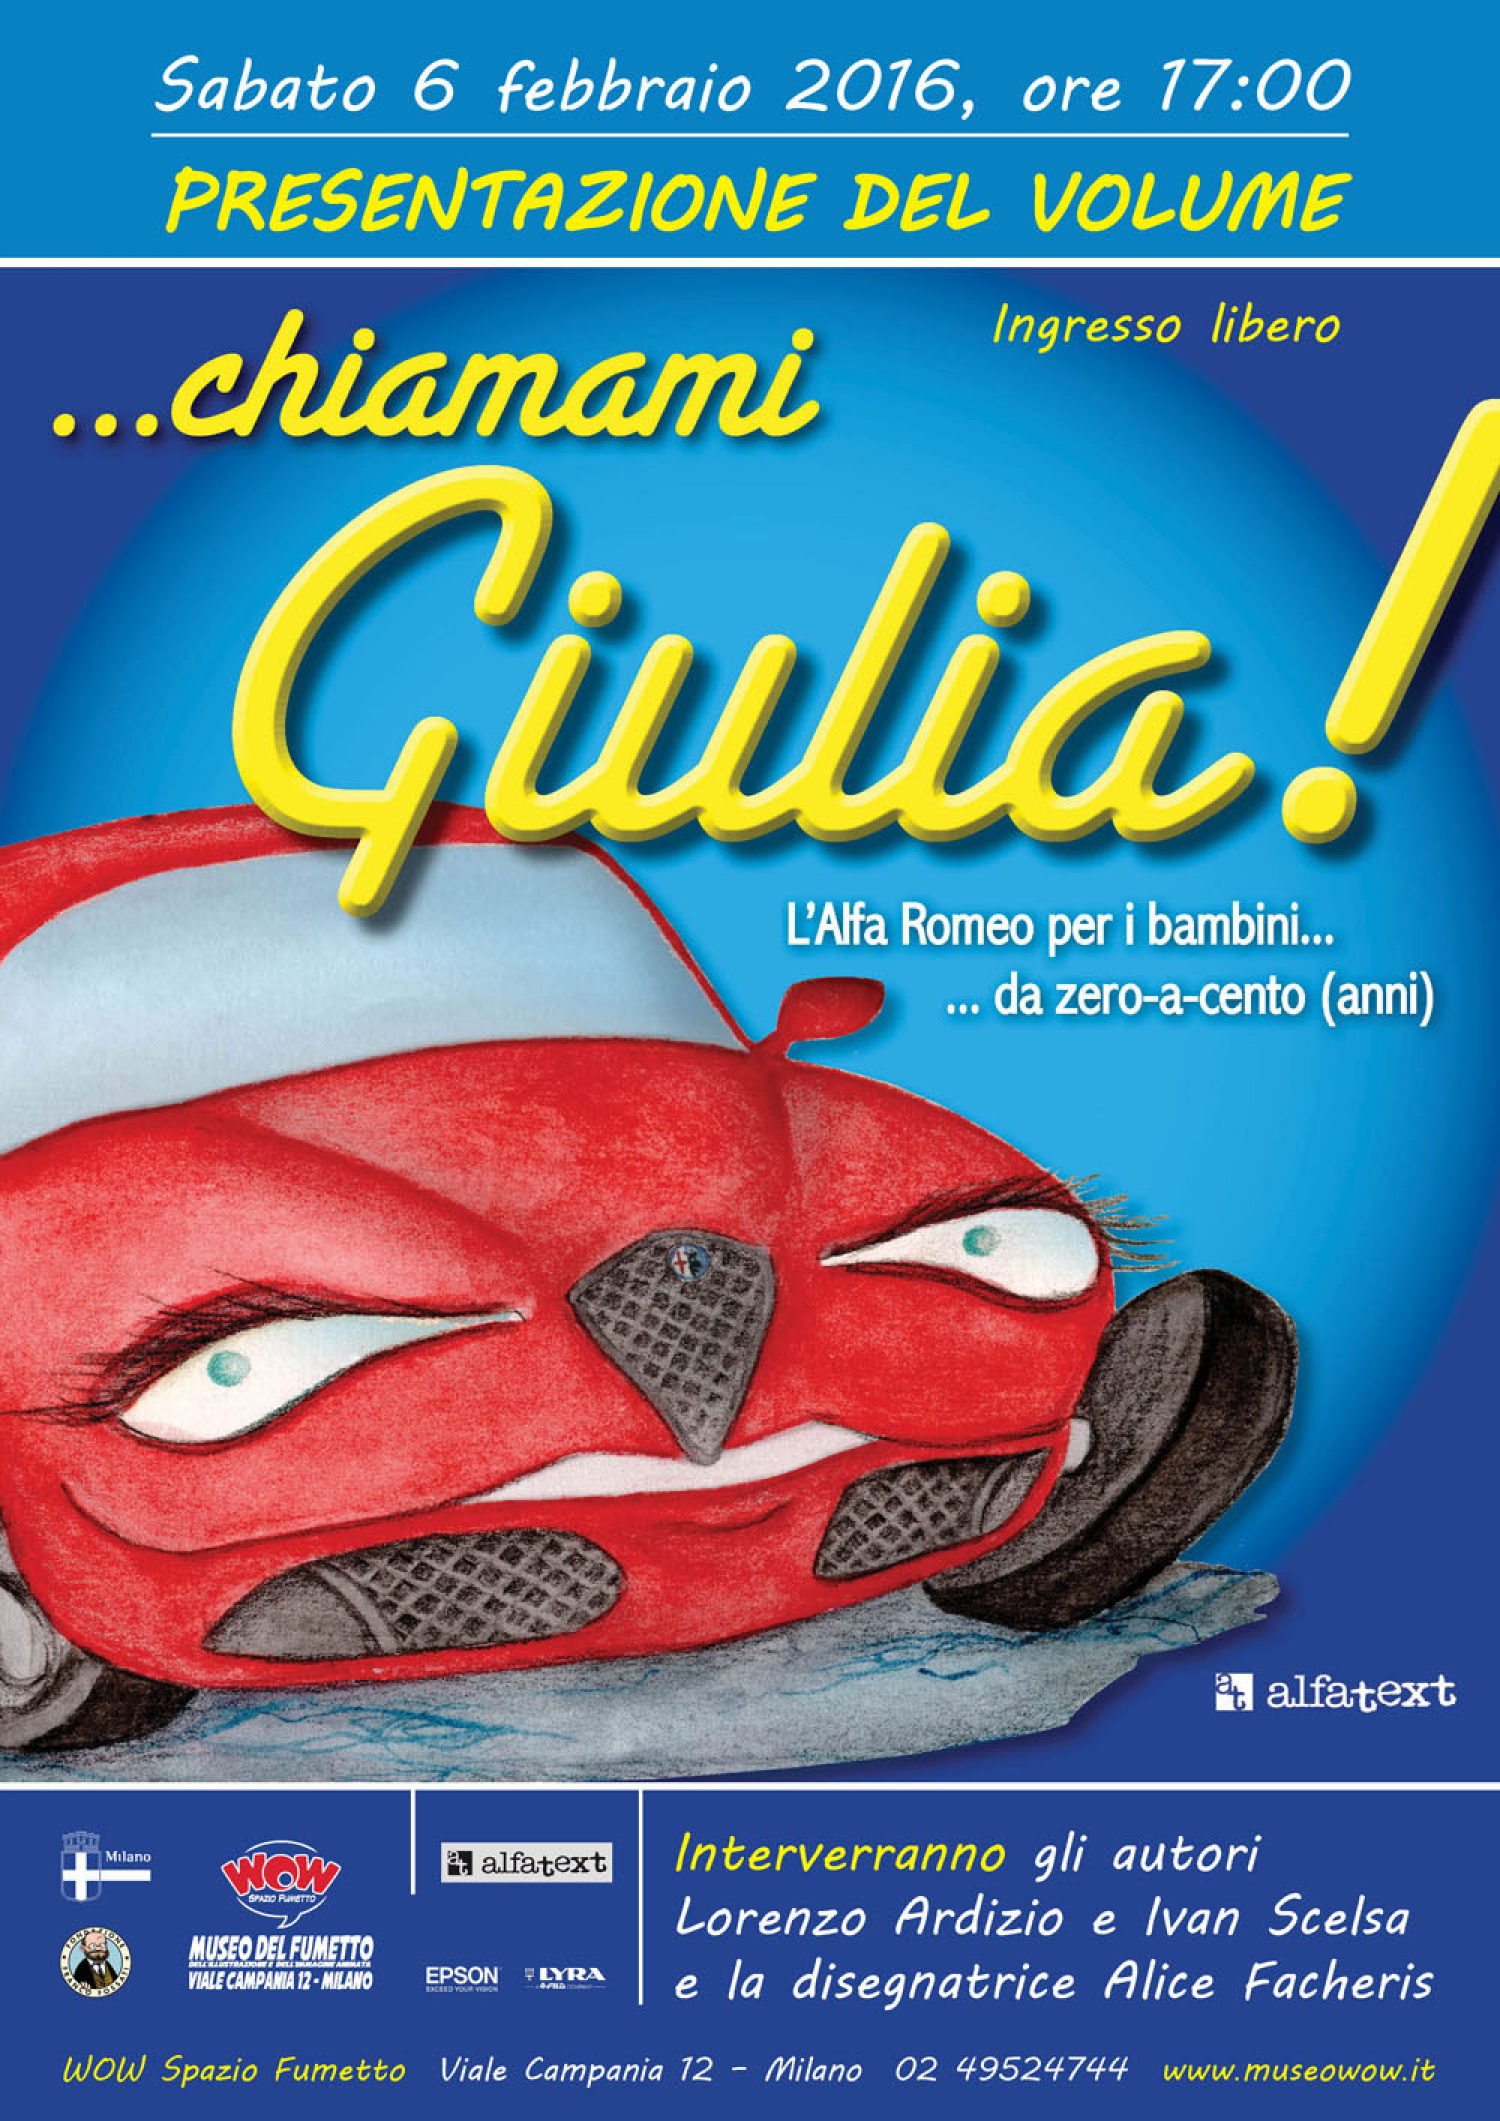 <p><strong>Lorenzo Ardizio, curatore del Museo Alfa Romeo di Arese, e Ivan Scelsa, presidente di Associazione CinemAlfa, entrambi autori di numerosi testi automobilistici tra cui&nbsp;</strong>&ndash;&nbsp;<strong>proprio a loro firma&nbsp;</strong>&ndash;&nbsp;<strong><em>Alfa Romeo Amarcord</em>, presentano il libro <em>&hellip;chiamami Giulia!</em> (Edizioni Alfatext). Illustrato da Alice Facheris per raccontare anche ai pi&ugrave; piccoli, con un linguaggio semplice e tanti disegni, il mito di un&rsquo;auto che ha fatto la storia dell&rsquo;automobilismo italiano e non solo: l&rsquo;Alfa Romeo.</strong> Dalle mitiche gazzelle della polizia all&rsquo;elegantissima Giulietta e tante altre storie affascinanti. Scorrendo le pagine del testo, la neonata Giulia (una vettura gi&agrave; entrata nei sogni degli appassionati del Marchio) sviscera la storia delle sue antenate con un linguaggio semplice e diretto. I disegni, realizzati dalla disegnatrice Alice Facheris, sono la piacevole nota di colore che far&agrave; rimanere affascinati i giovani lettori. La storia dell&rsquo;Alfa viene raccontata in prima persona da Giulia:&nbsp;&laquo;Ciao! Io mi chiamo Giulia. Questa &egrave; la mia storia e quella della mia famiglia: l&rsquo;Alfa Romeo. Tra le mie illustri antenate ci sono grandi campionesse dello sport, reginette dei concorsi di eleganza, automobili velocissime, affascinanti ed indimenticabili star del cinema. Vieni a scoprirmi in un libro vivace e colorato che racconta una storia affascinante con tanti disegni inediti e colorati, immagini e testi simpatici!&raquo;. I bambini, e soprattutto i pap&agrave;, potranno anche scoprire dal vivo il fascino di queste vetture straordinarie ammirando una bellissima Alfa Romeo Giulia esposta davanti al museo per l&rsquo;occasione.</p>